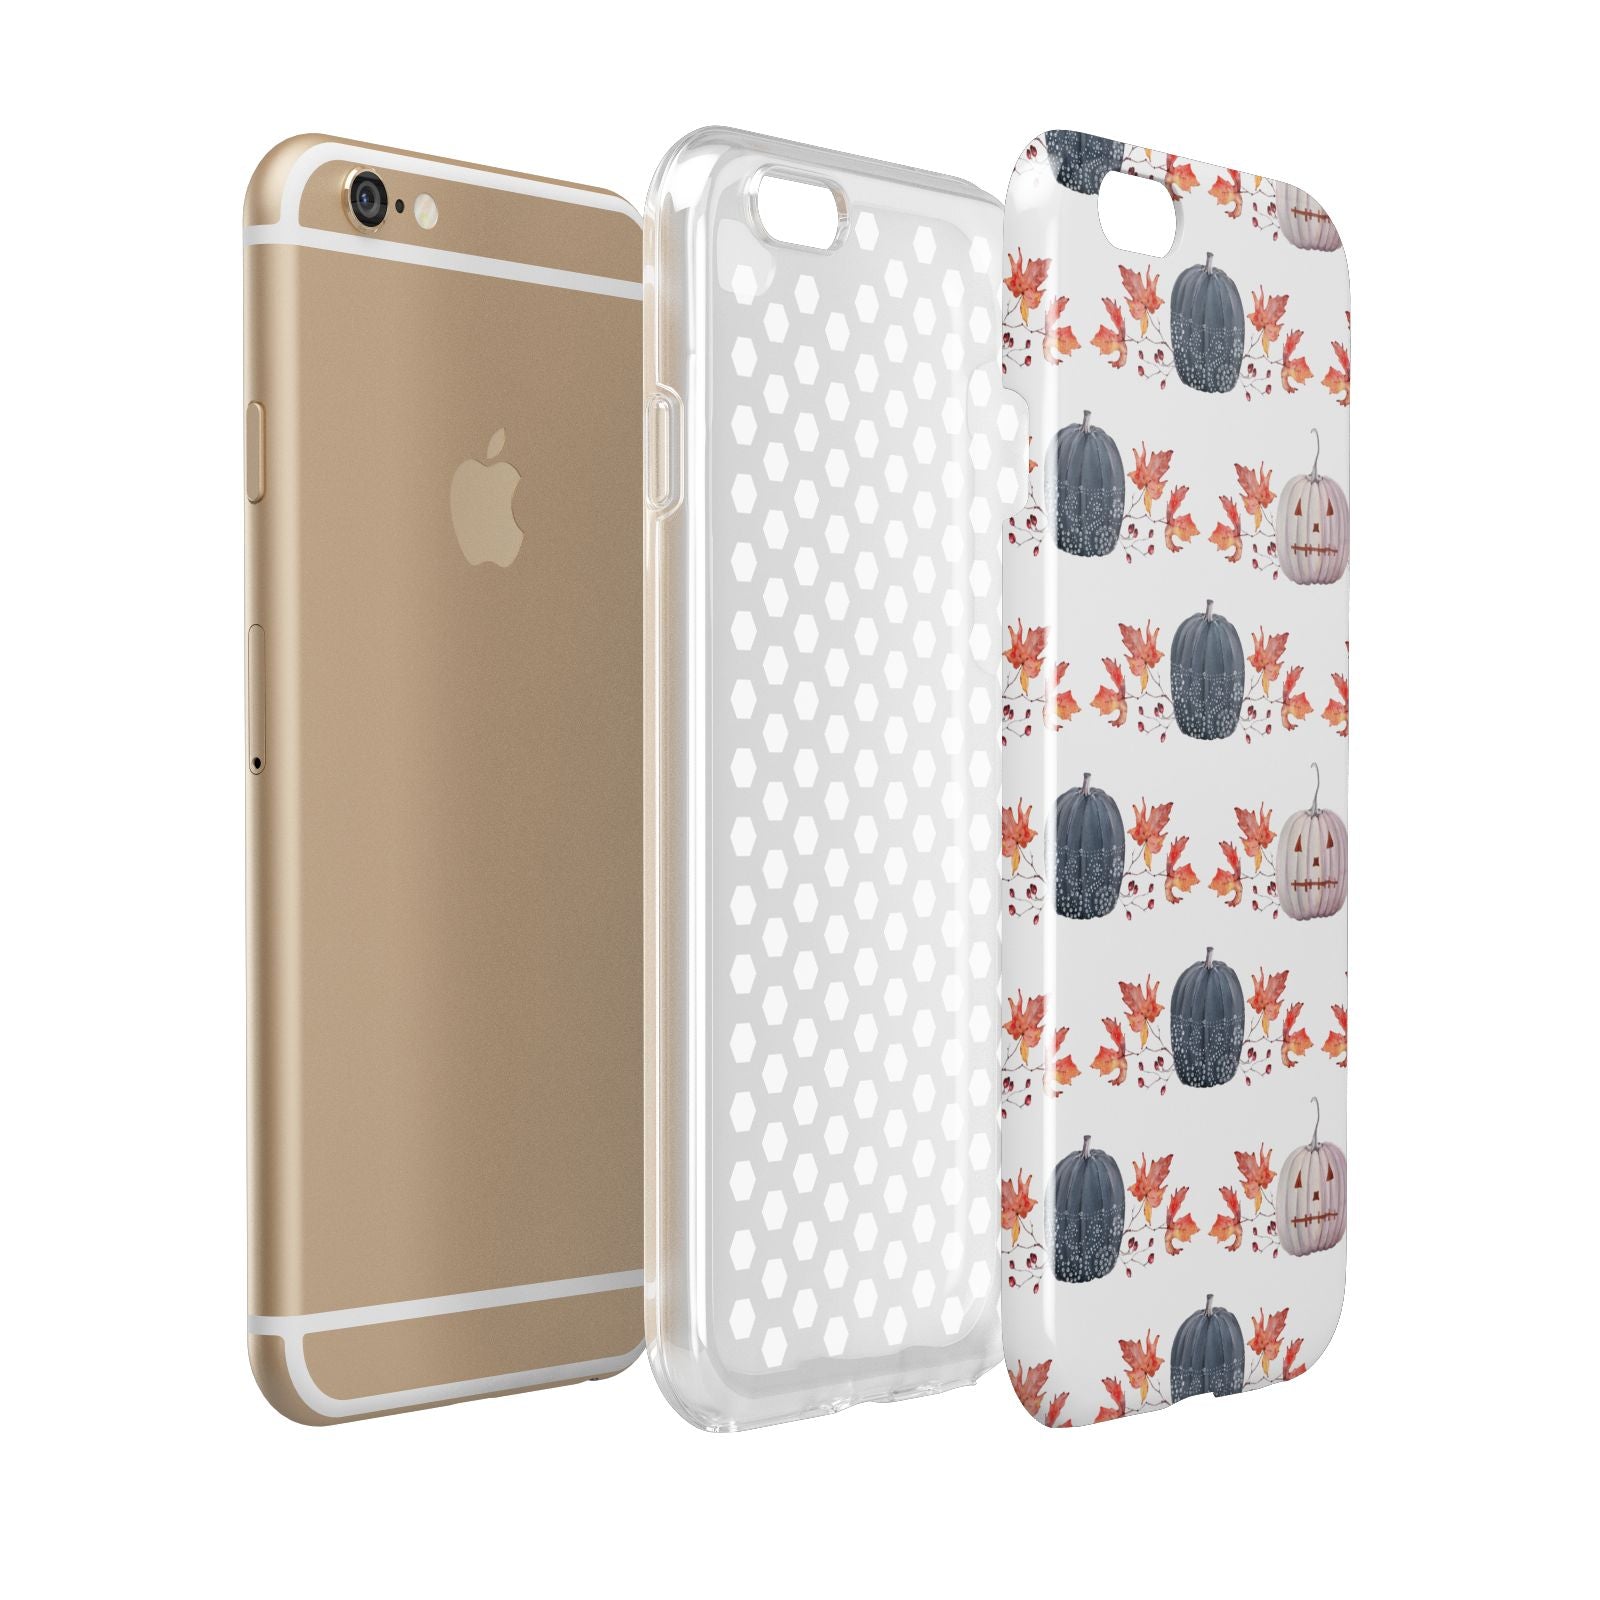 Pumpkin Autumn Leaves Apple iPhone 6 3D Tough Case Expanded view